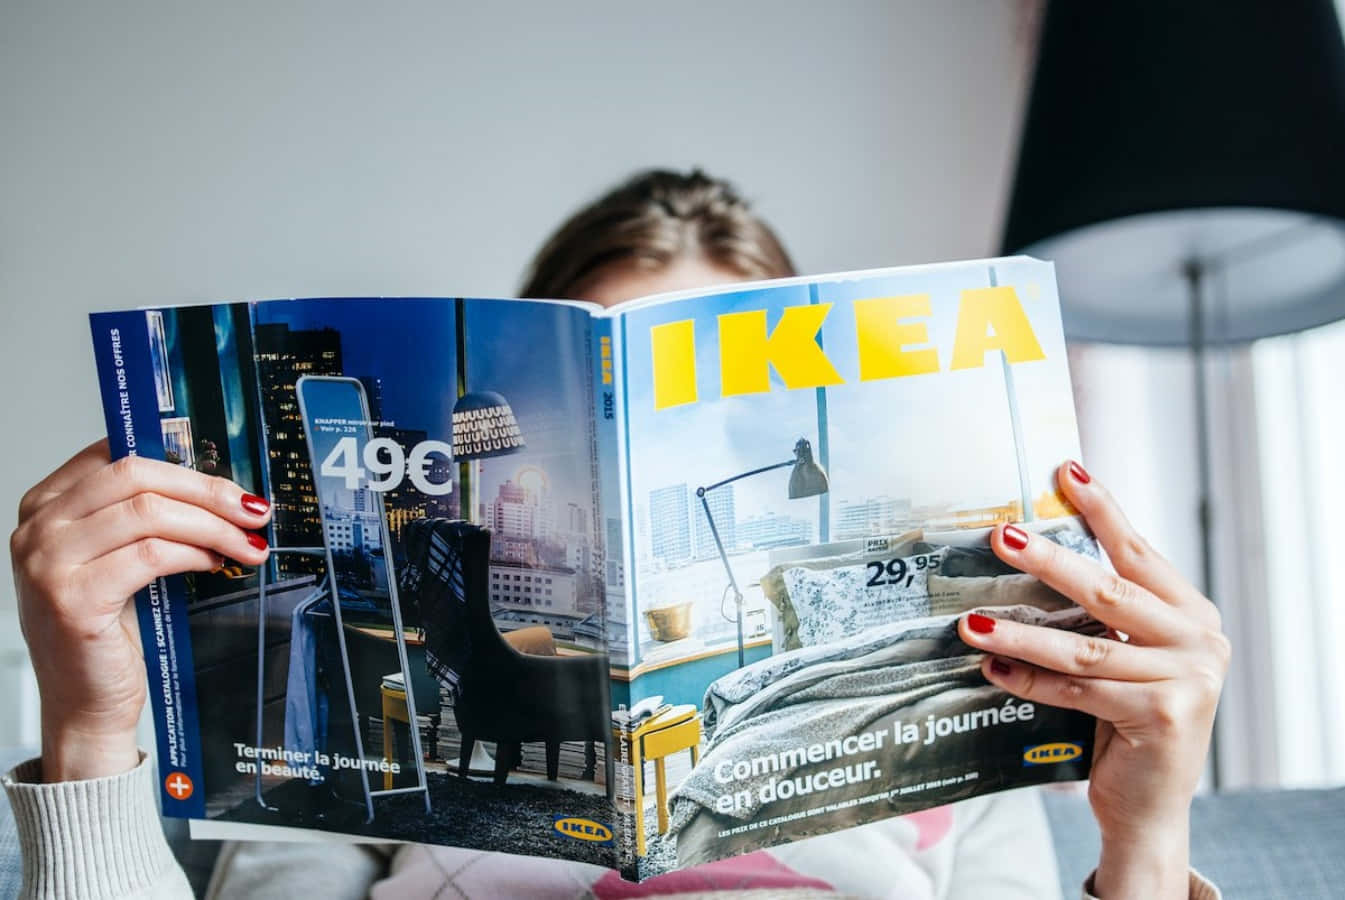 Enkvinna Läser En Tidning Om Ikea.